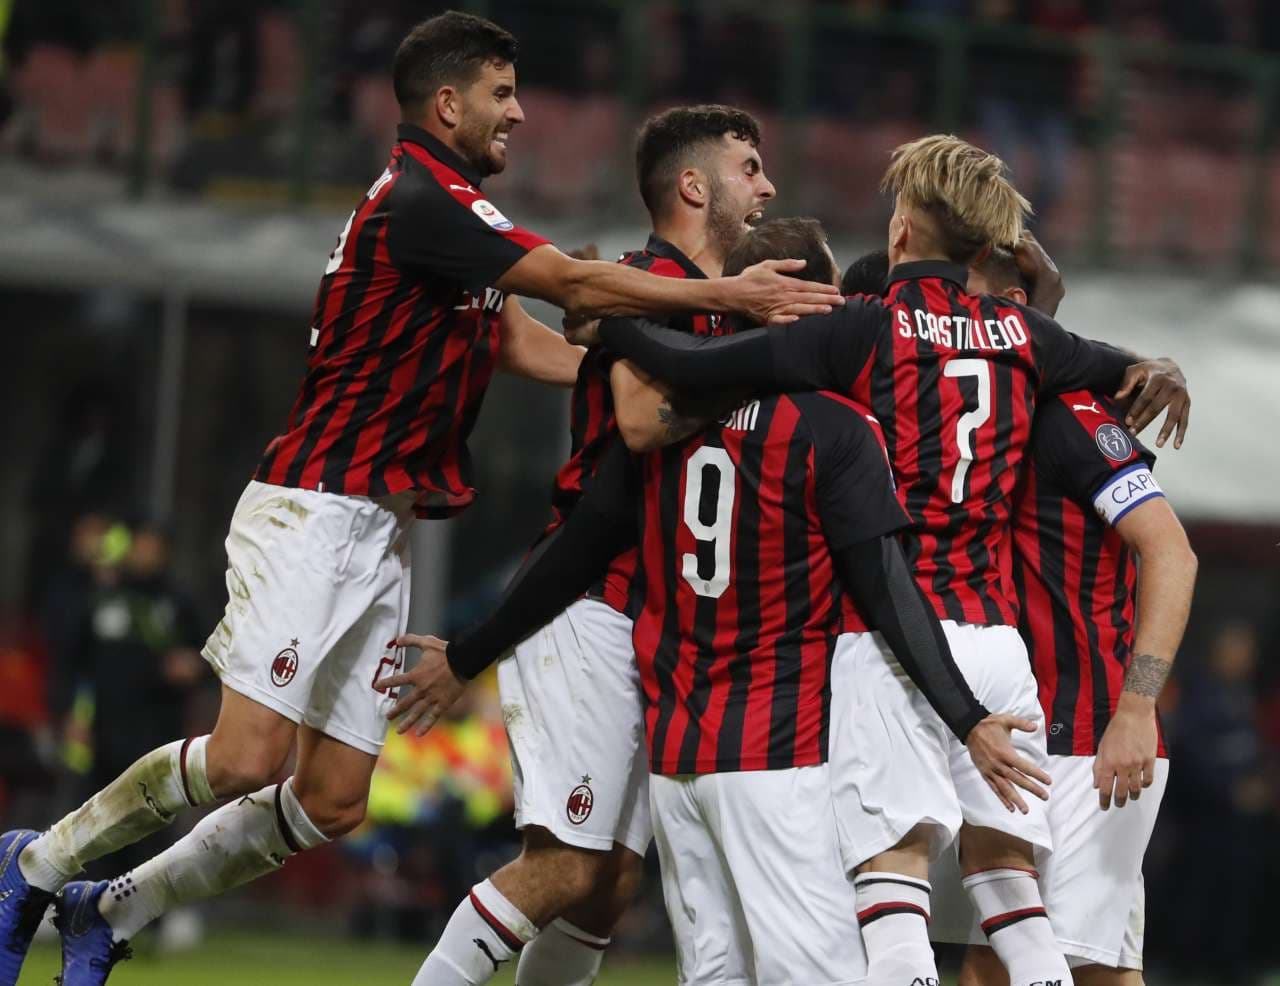 Serie A - A 97. percben nyerte meg mérkőzését a Milan